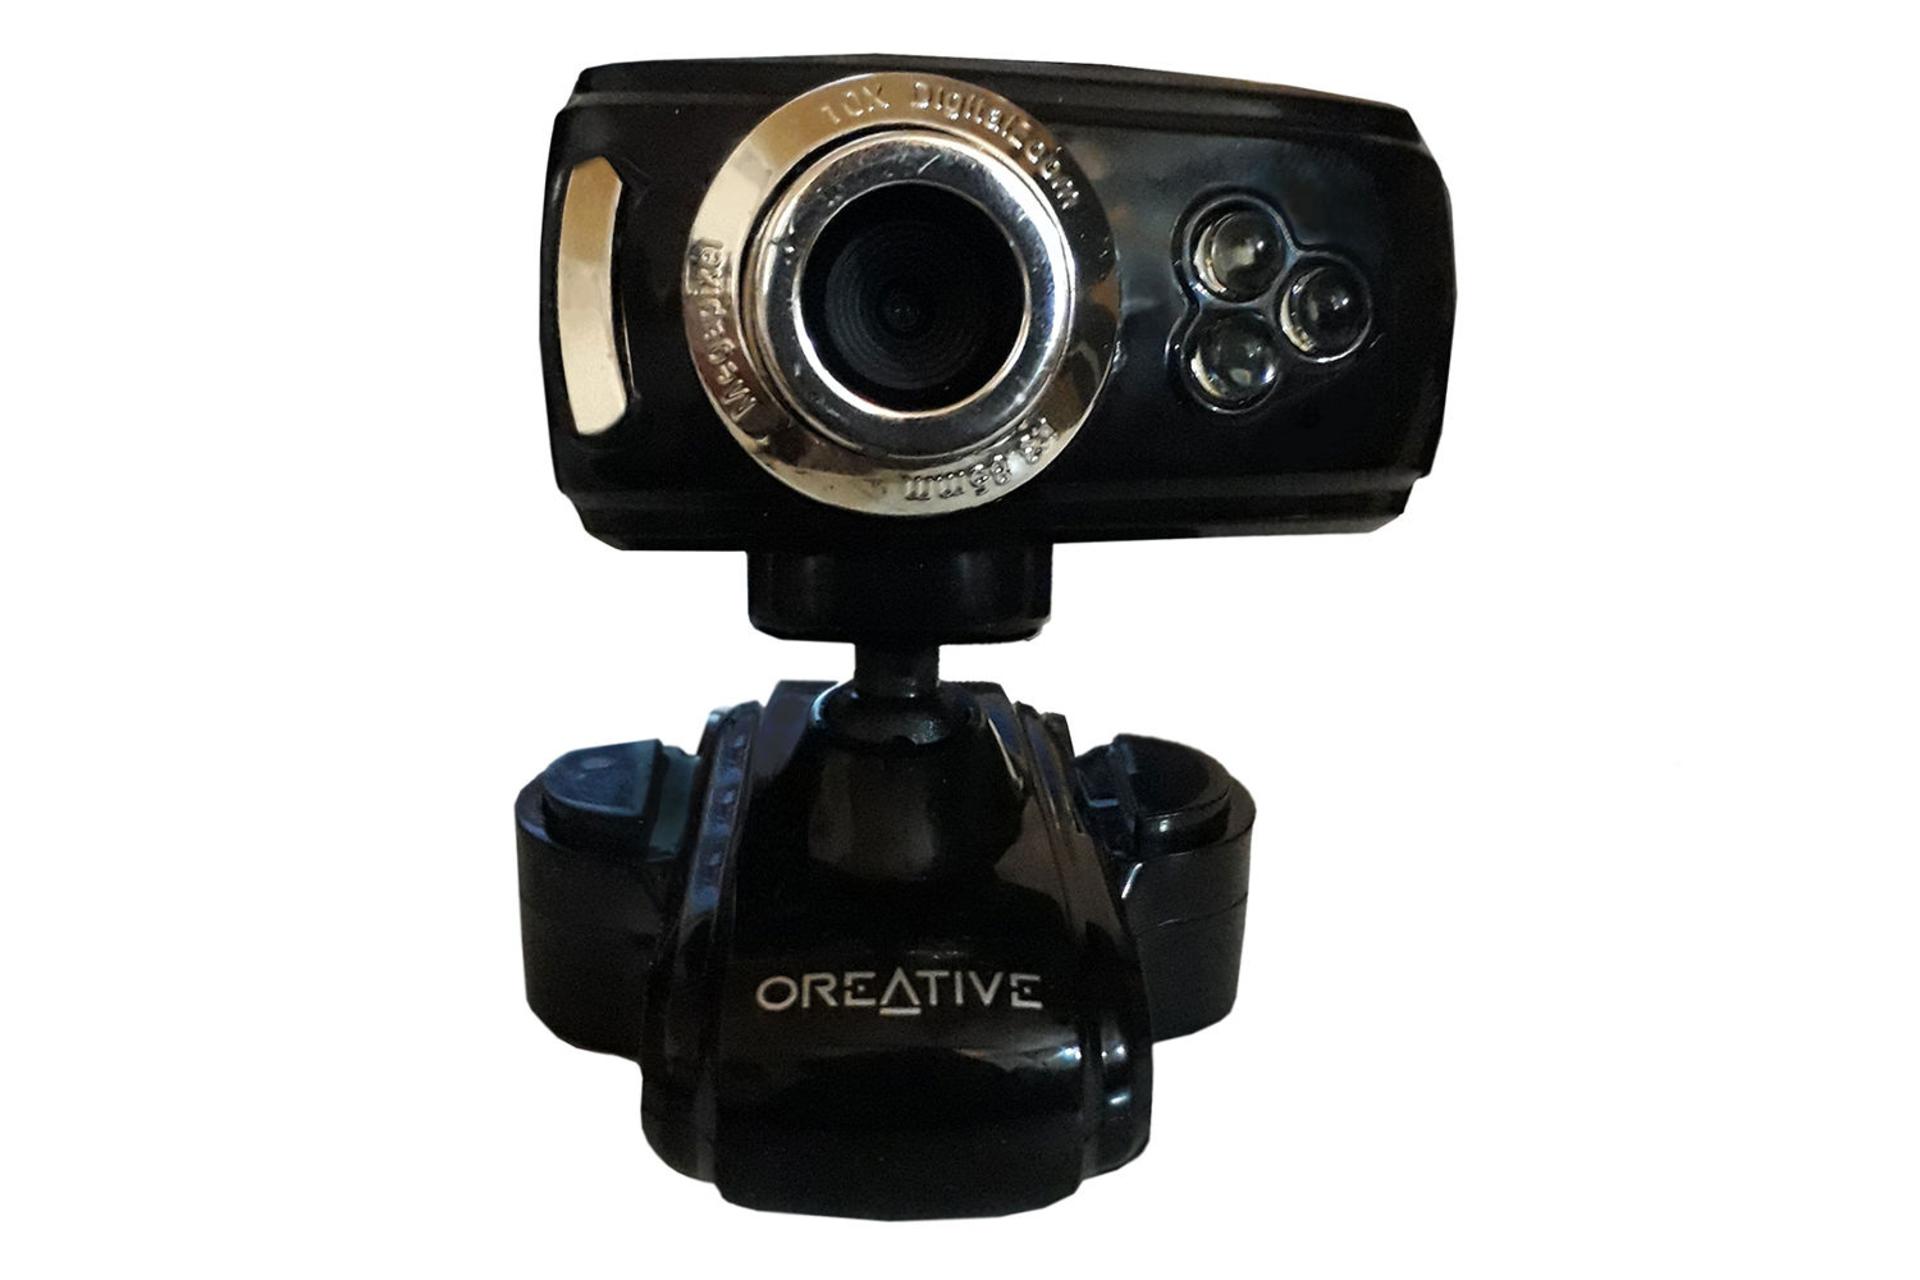 وب کم کریتیو Creative USB Web Camera